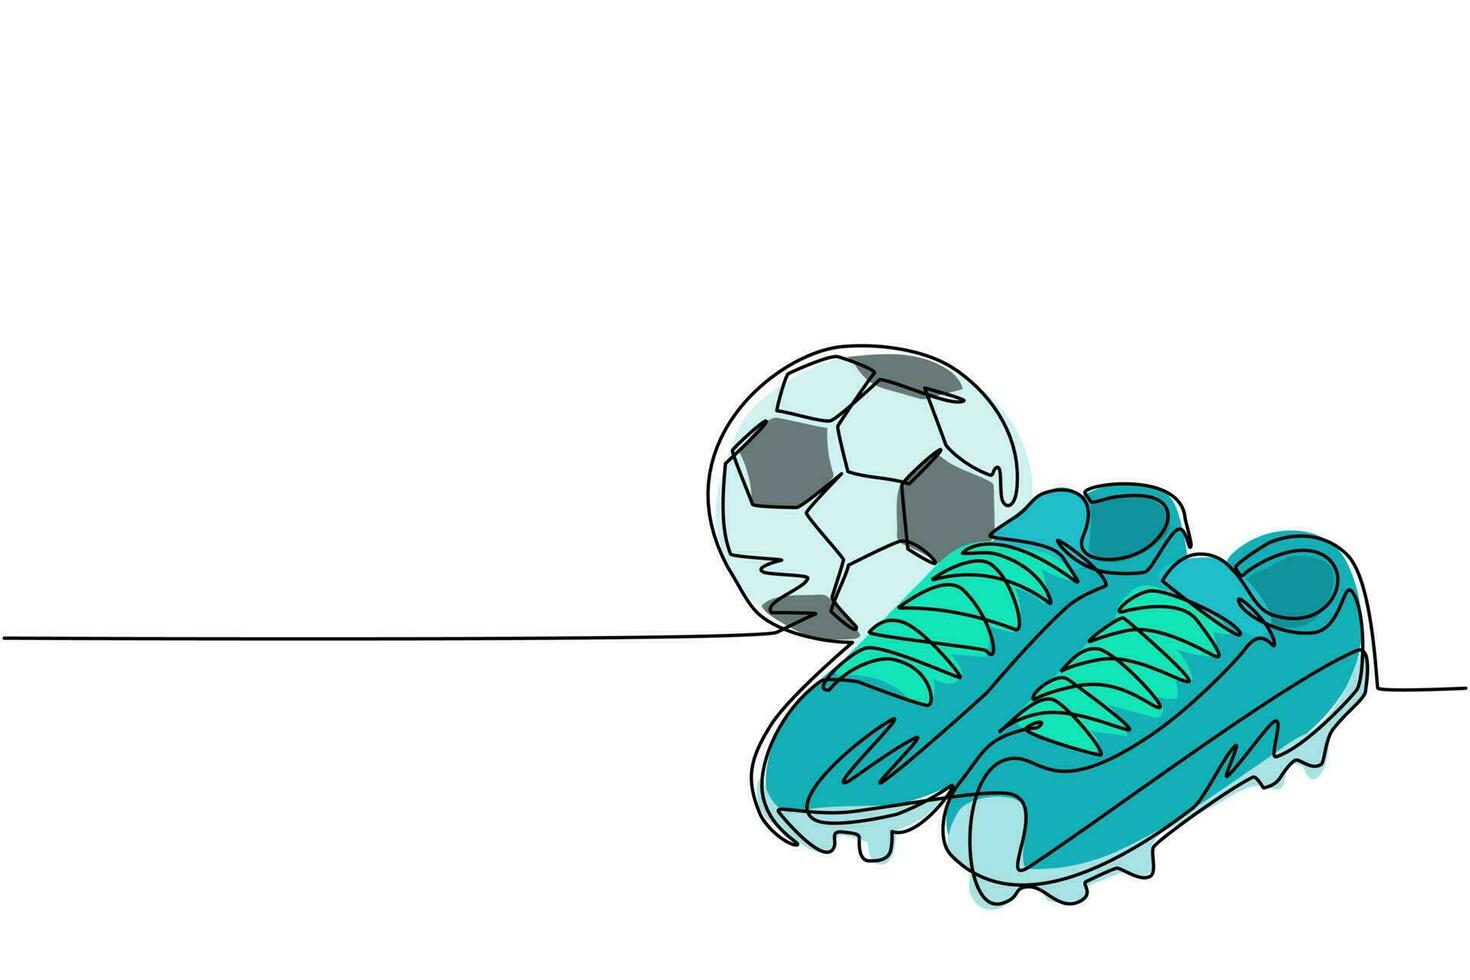 enda kontinuerlig linje ritning fotbollsskor och fotboll. fotboll ikon. fotbollsskor. sportinventering. för sportbutiksannons, apppiktogram, infografik. en rad rita grafisk design vektor